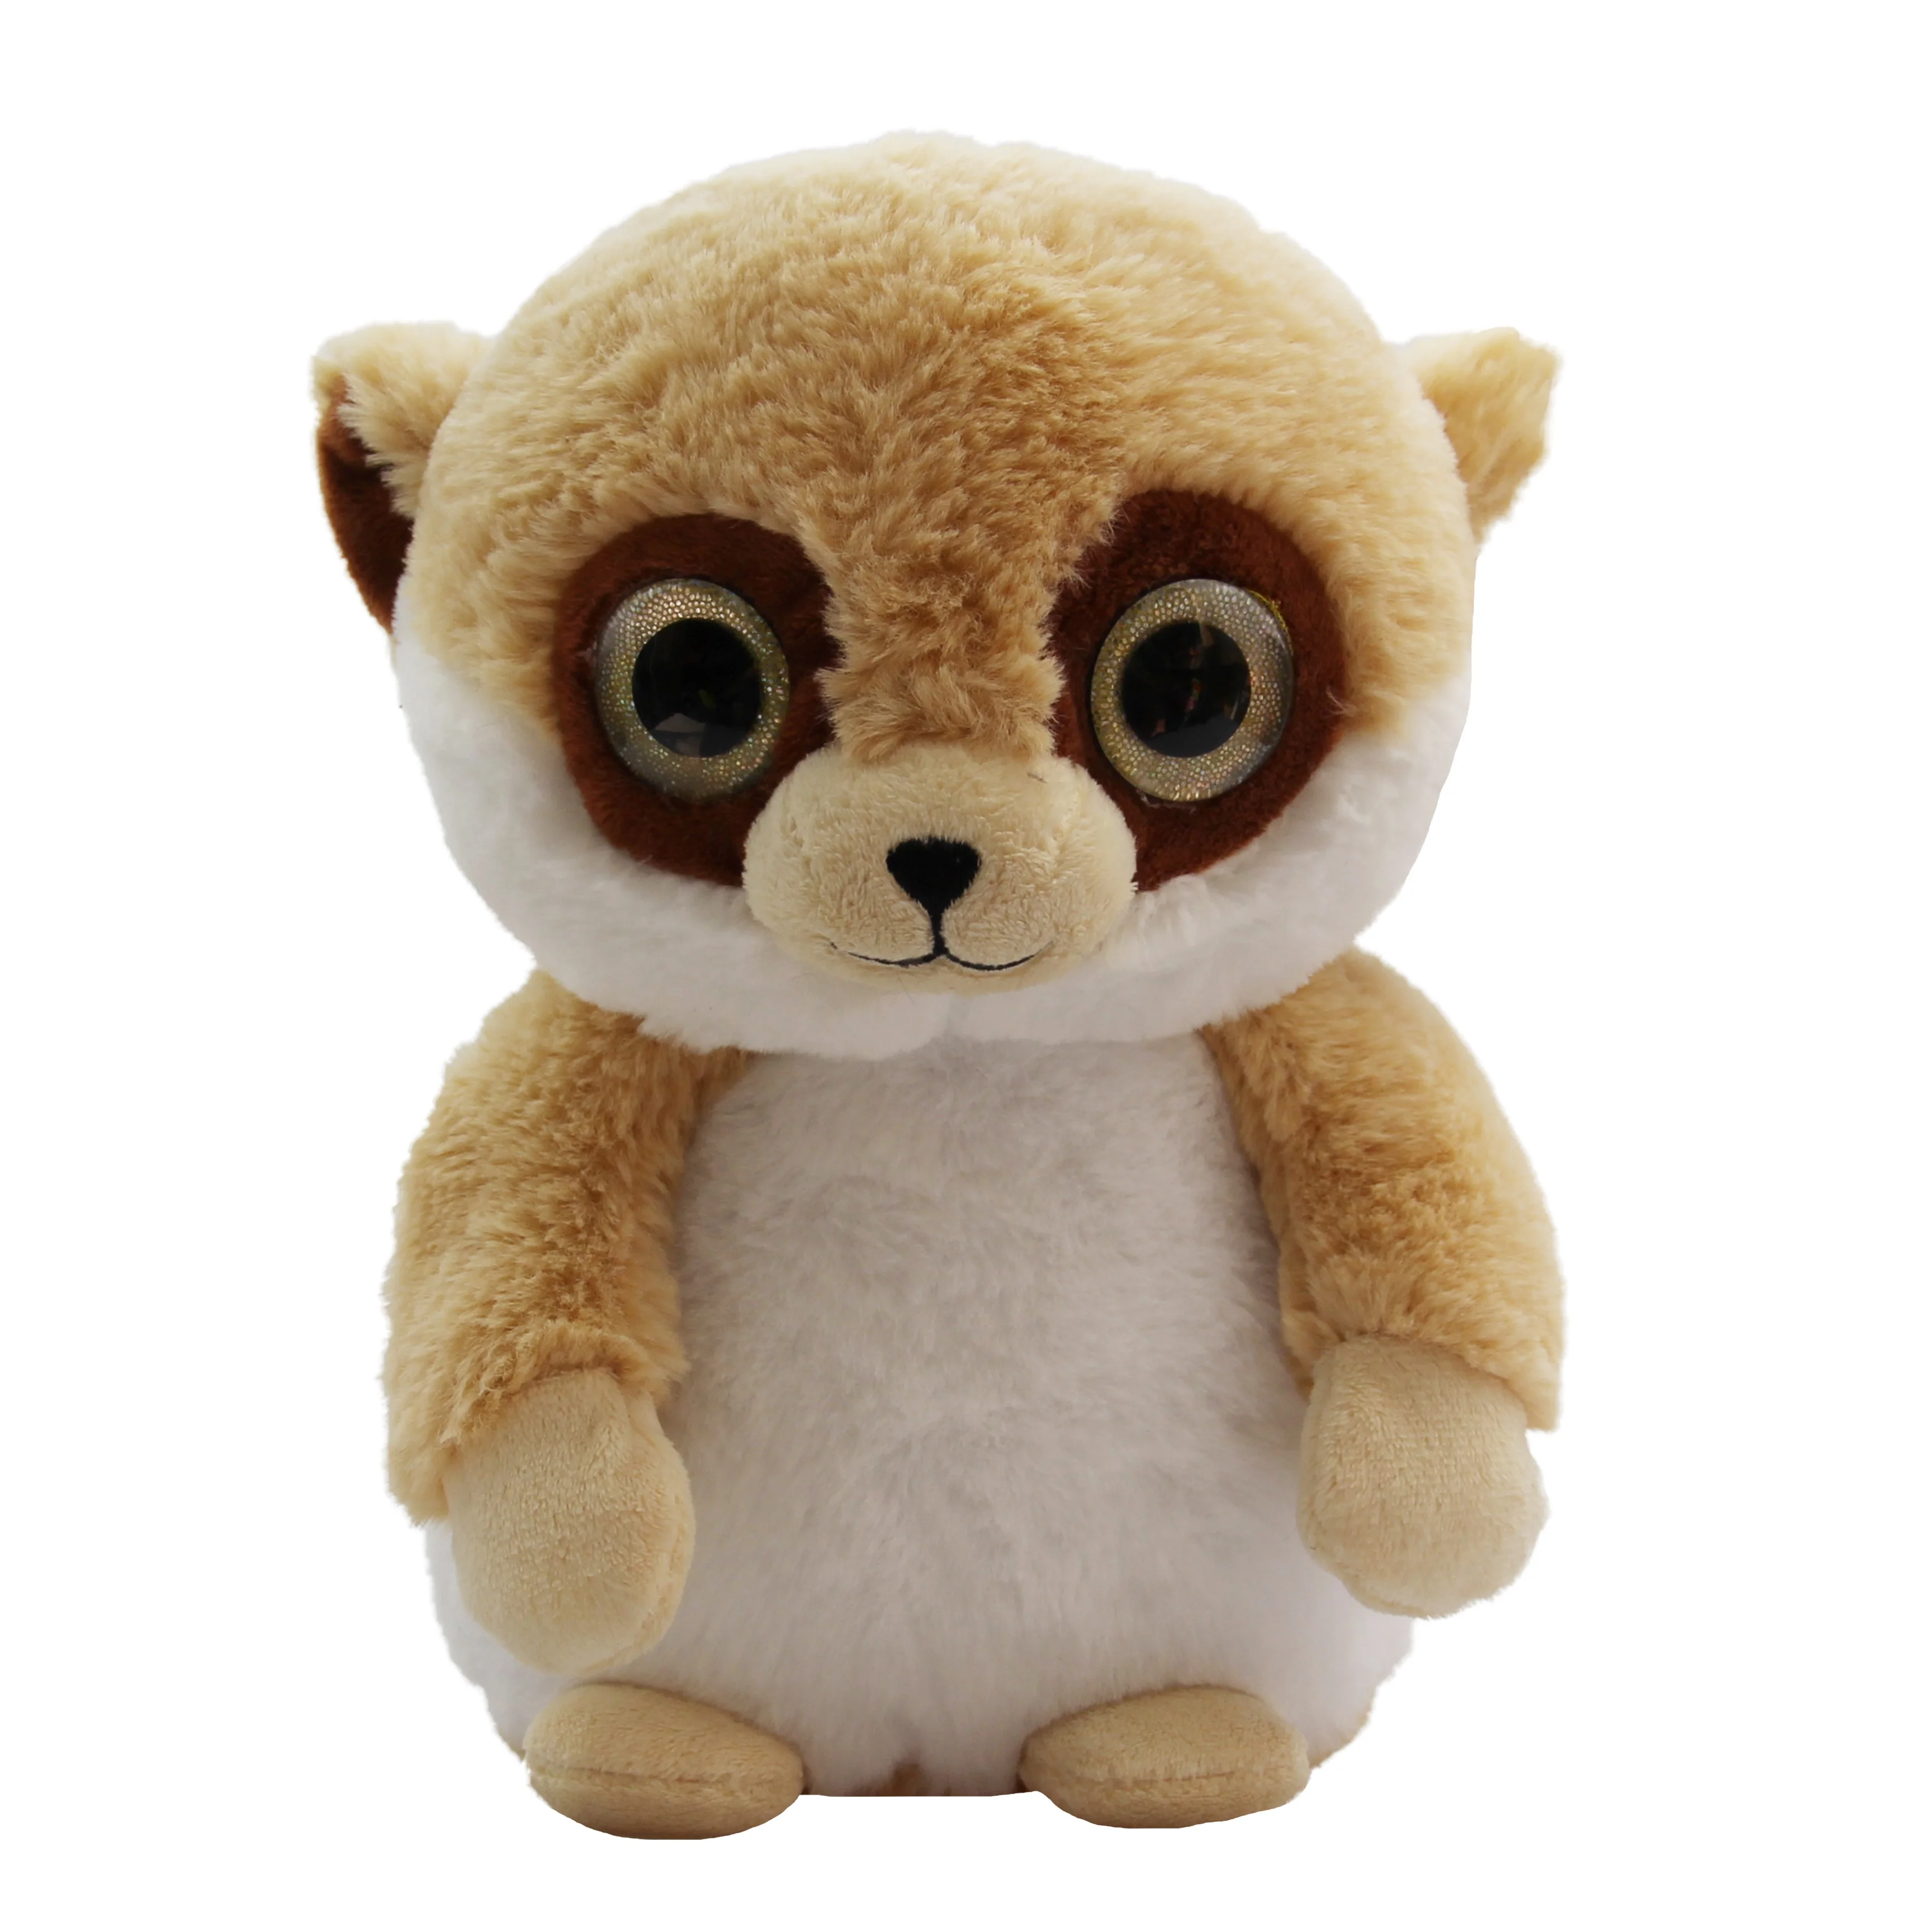 大きな目と丸い頭を持つぬいぐるみの猿 Buy ぬいぐるみ猿 誕生日のおもちゃ 猿のおもちゃ Product On Alibaba Com